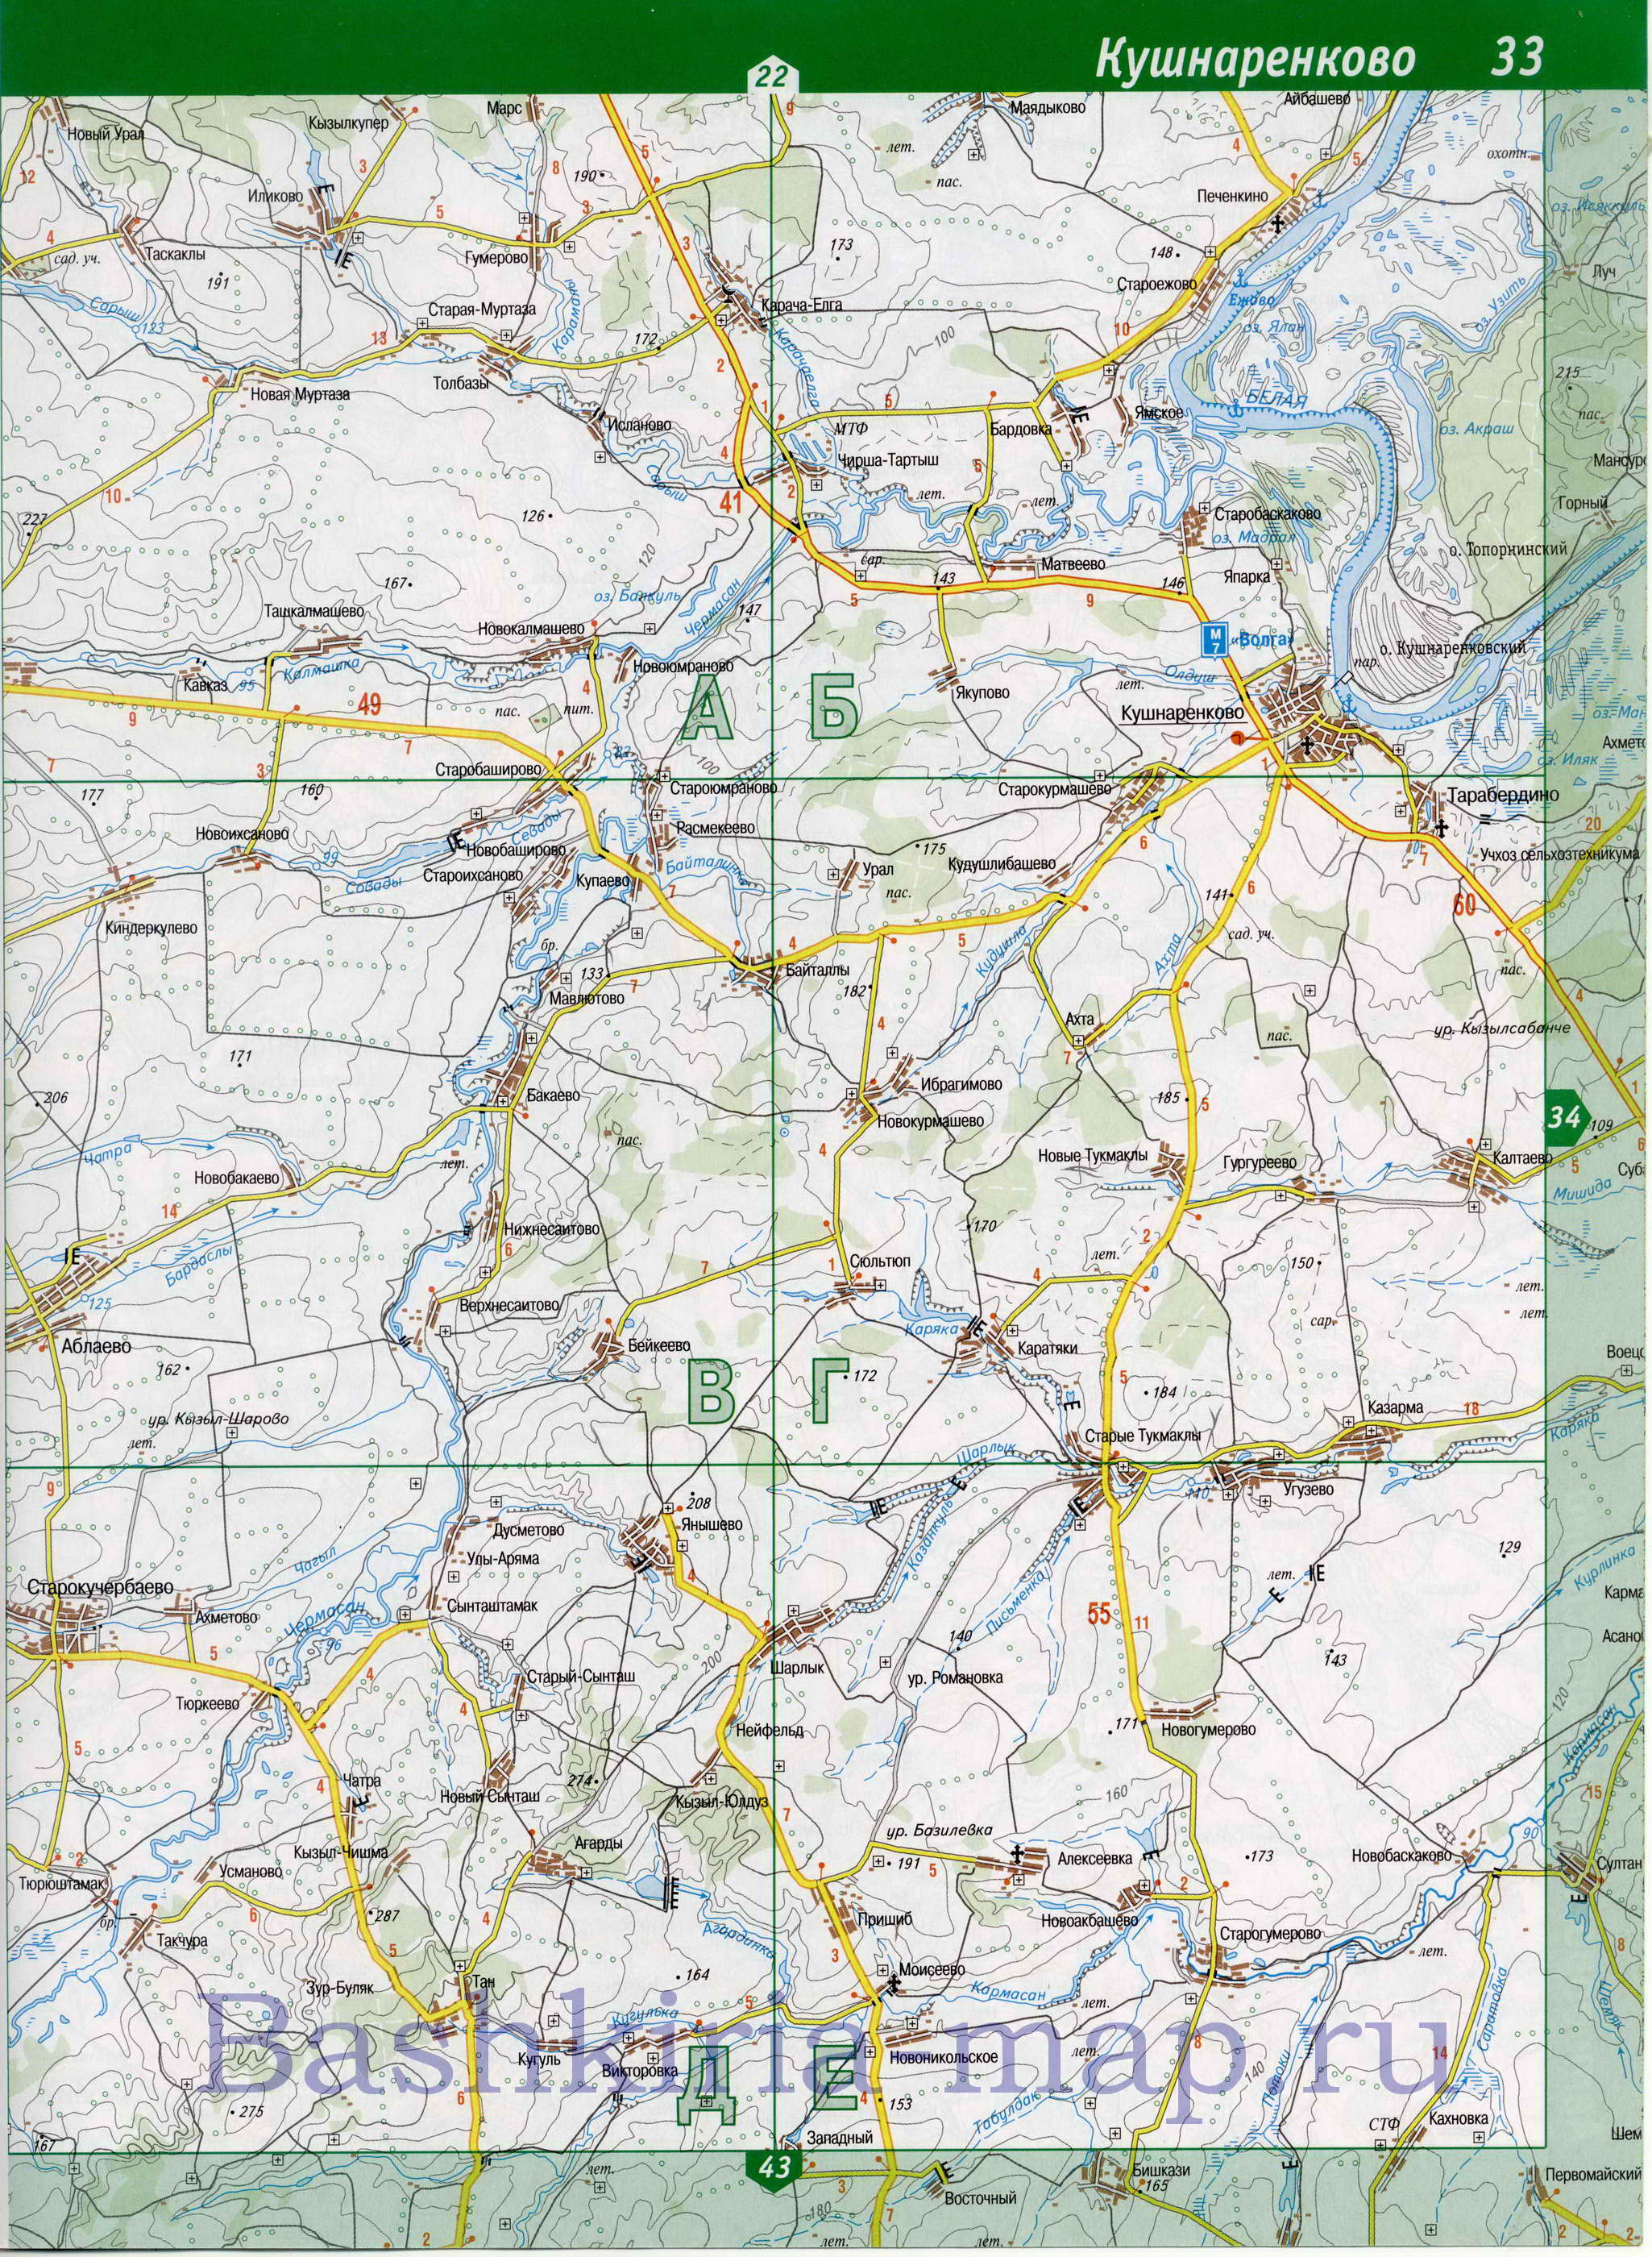 Карта кушнаренковского района с деревнями и дорогами подробная